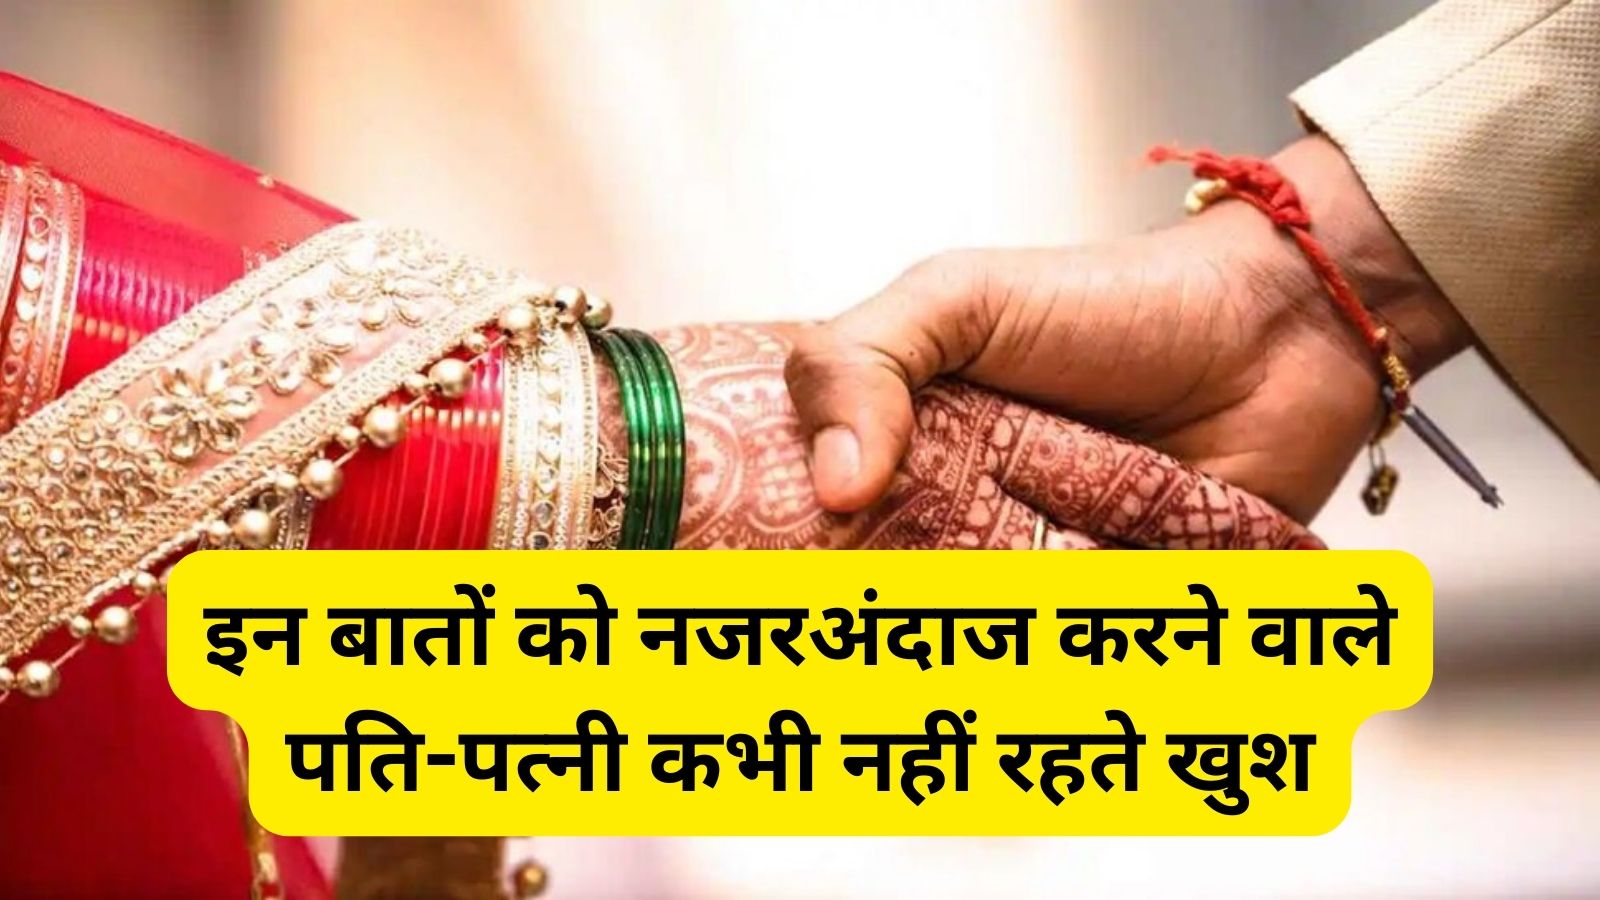 Chanakya Niti : इन बातों को नजरअंदाज करने वाले पति-पत्नी कभी नहीं रहते खुश, टूटने के कगार पर पहुंच जाती है शादी